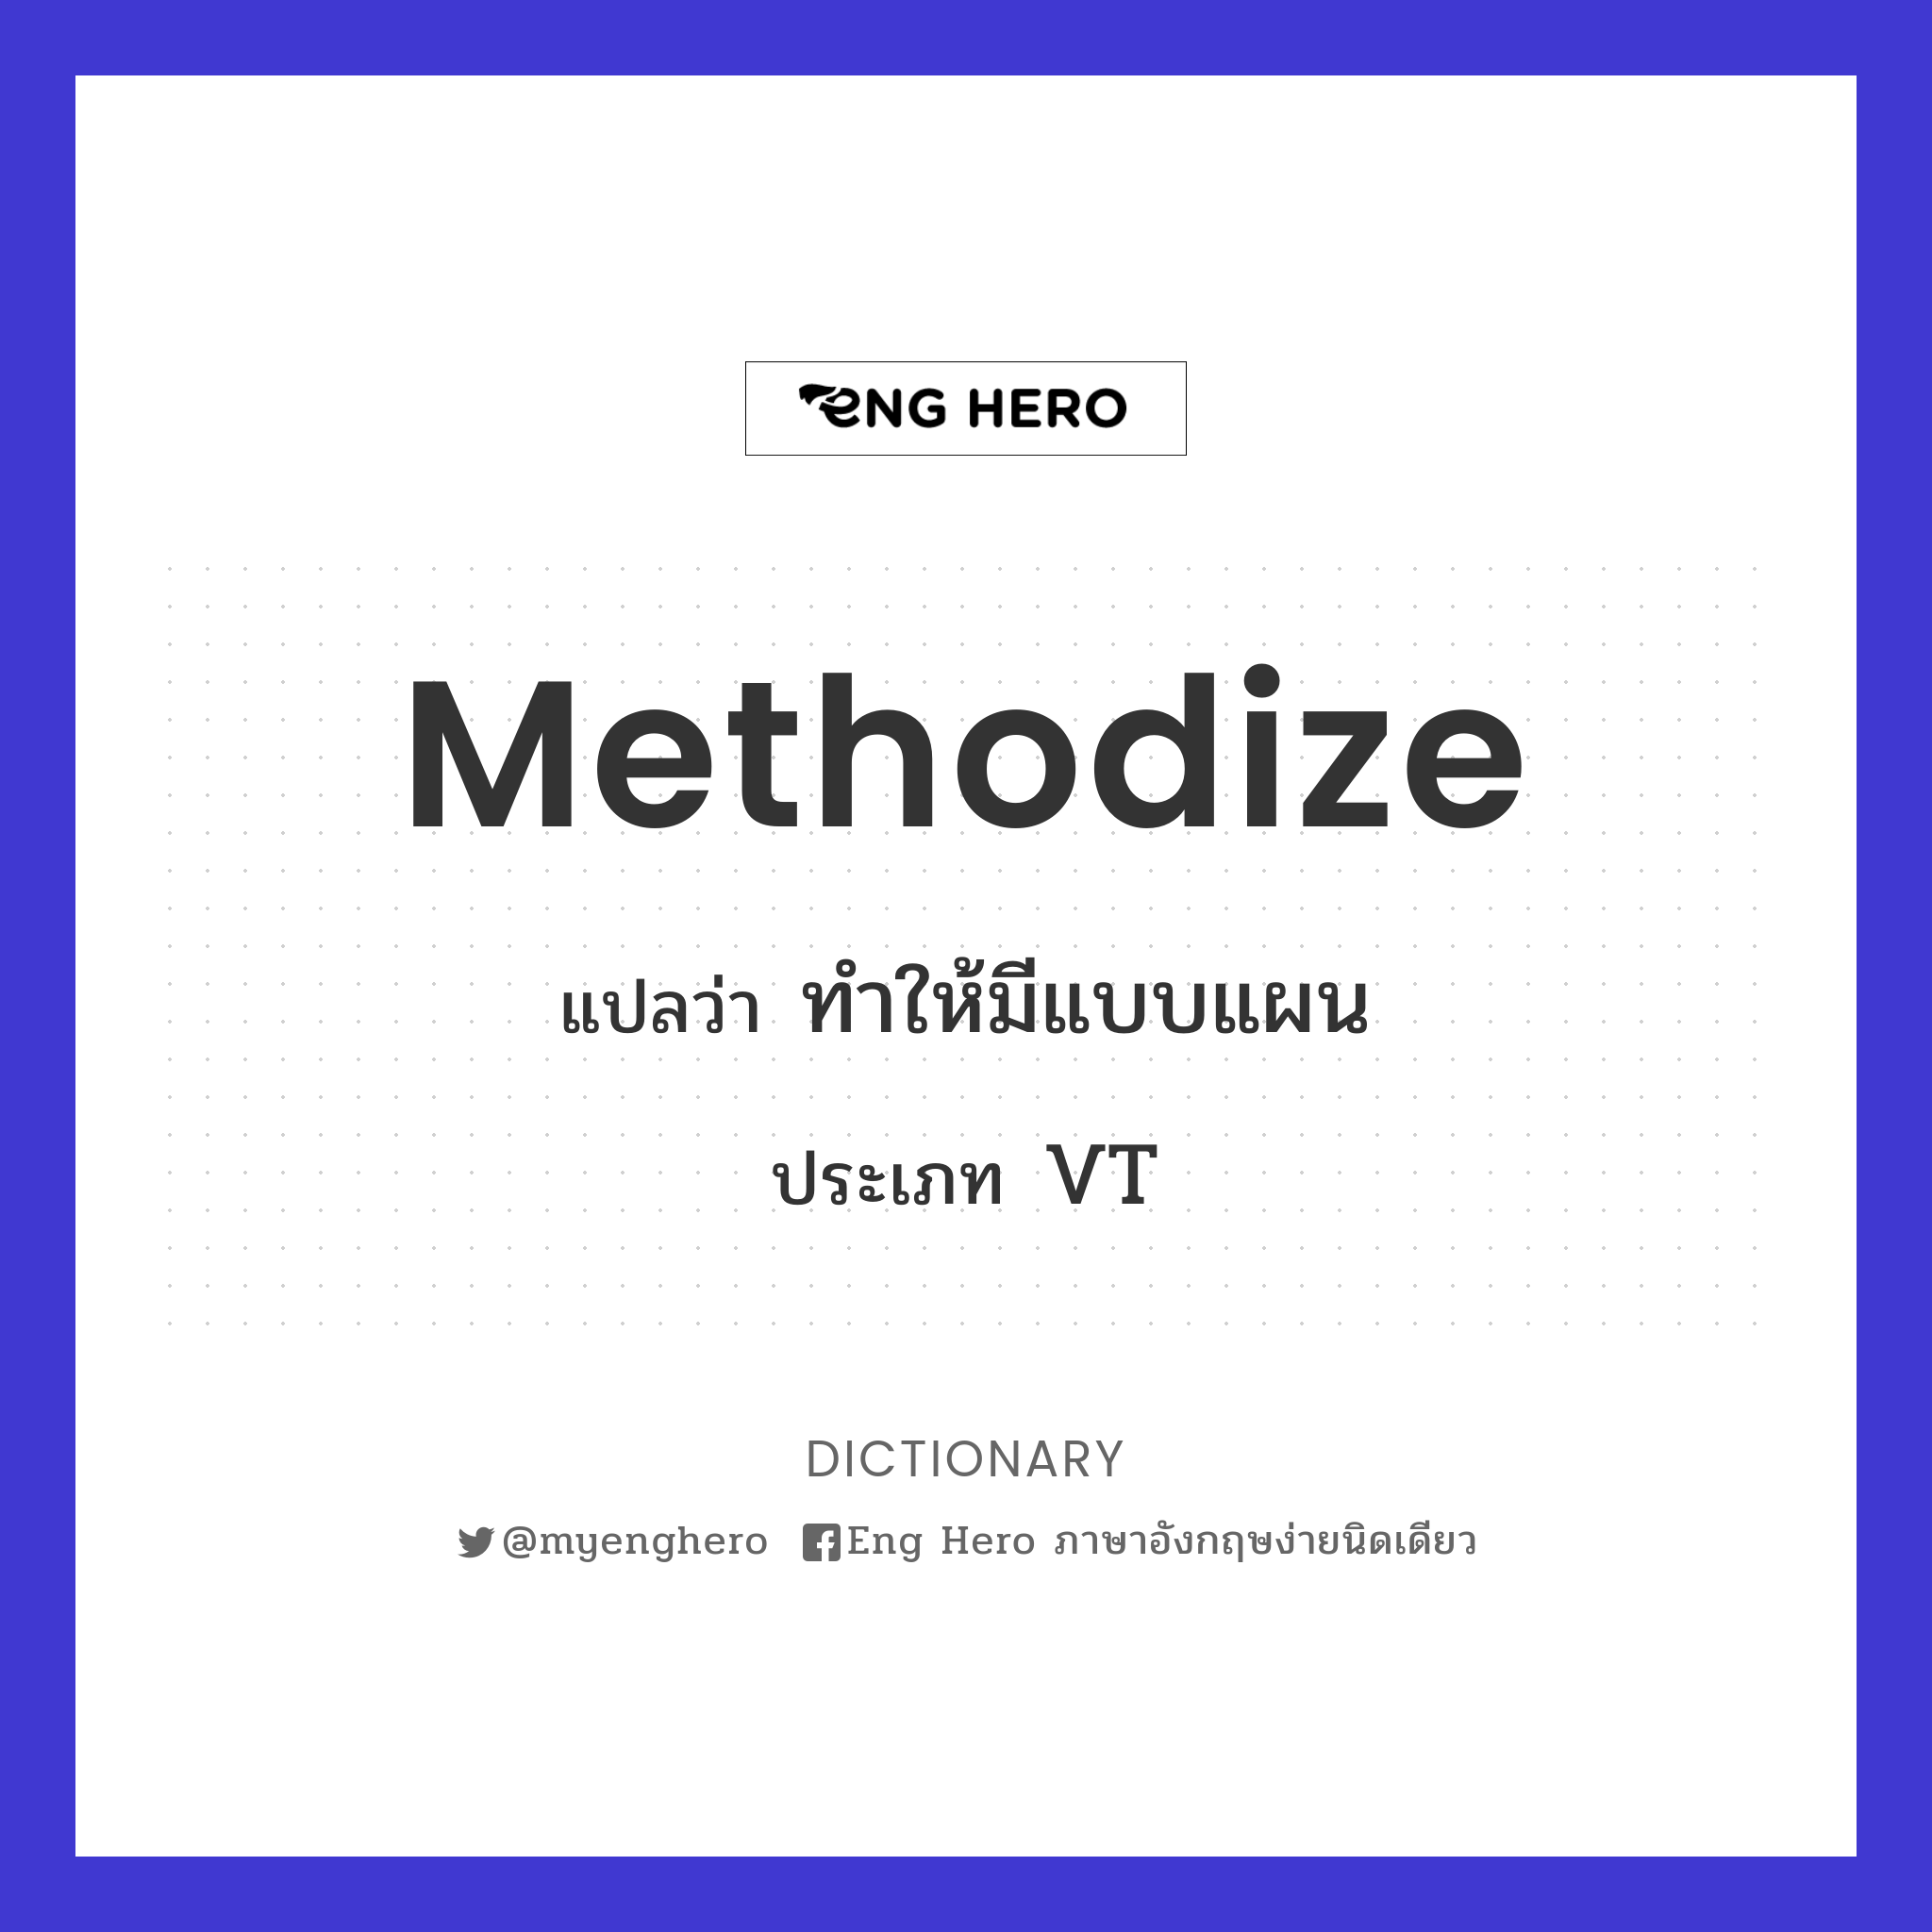 methodize